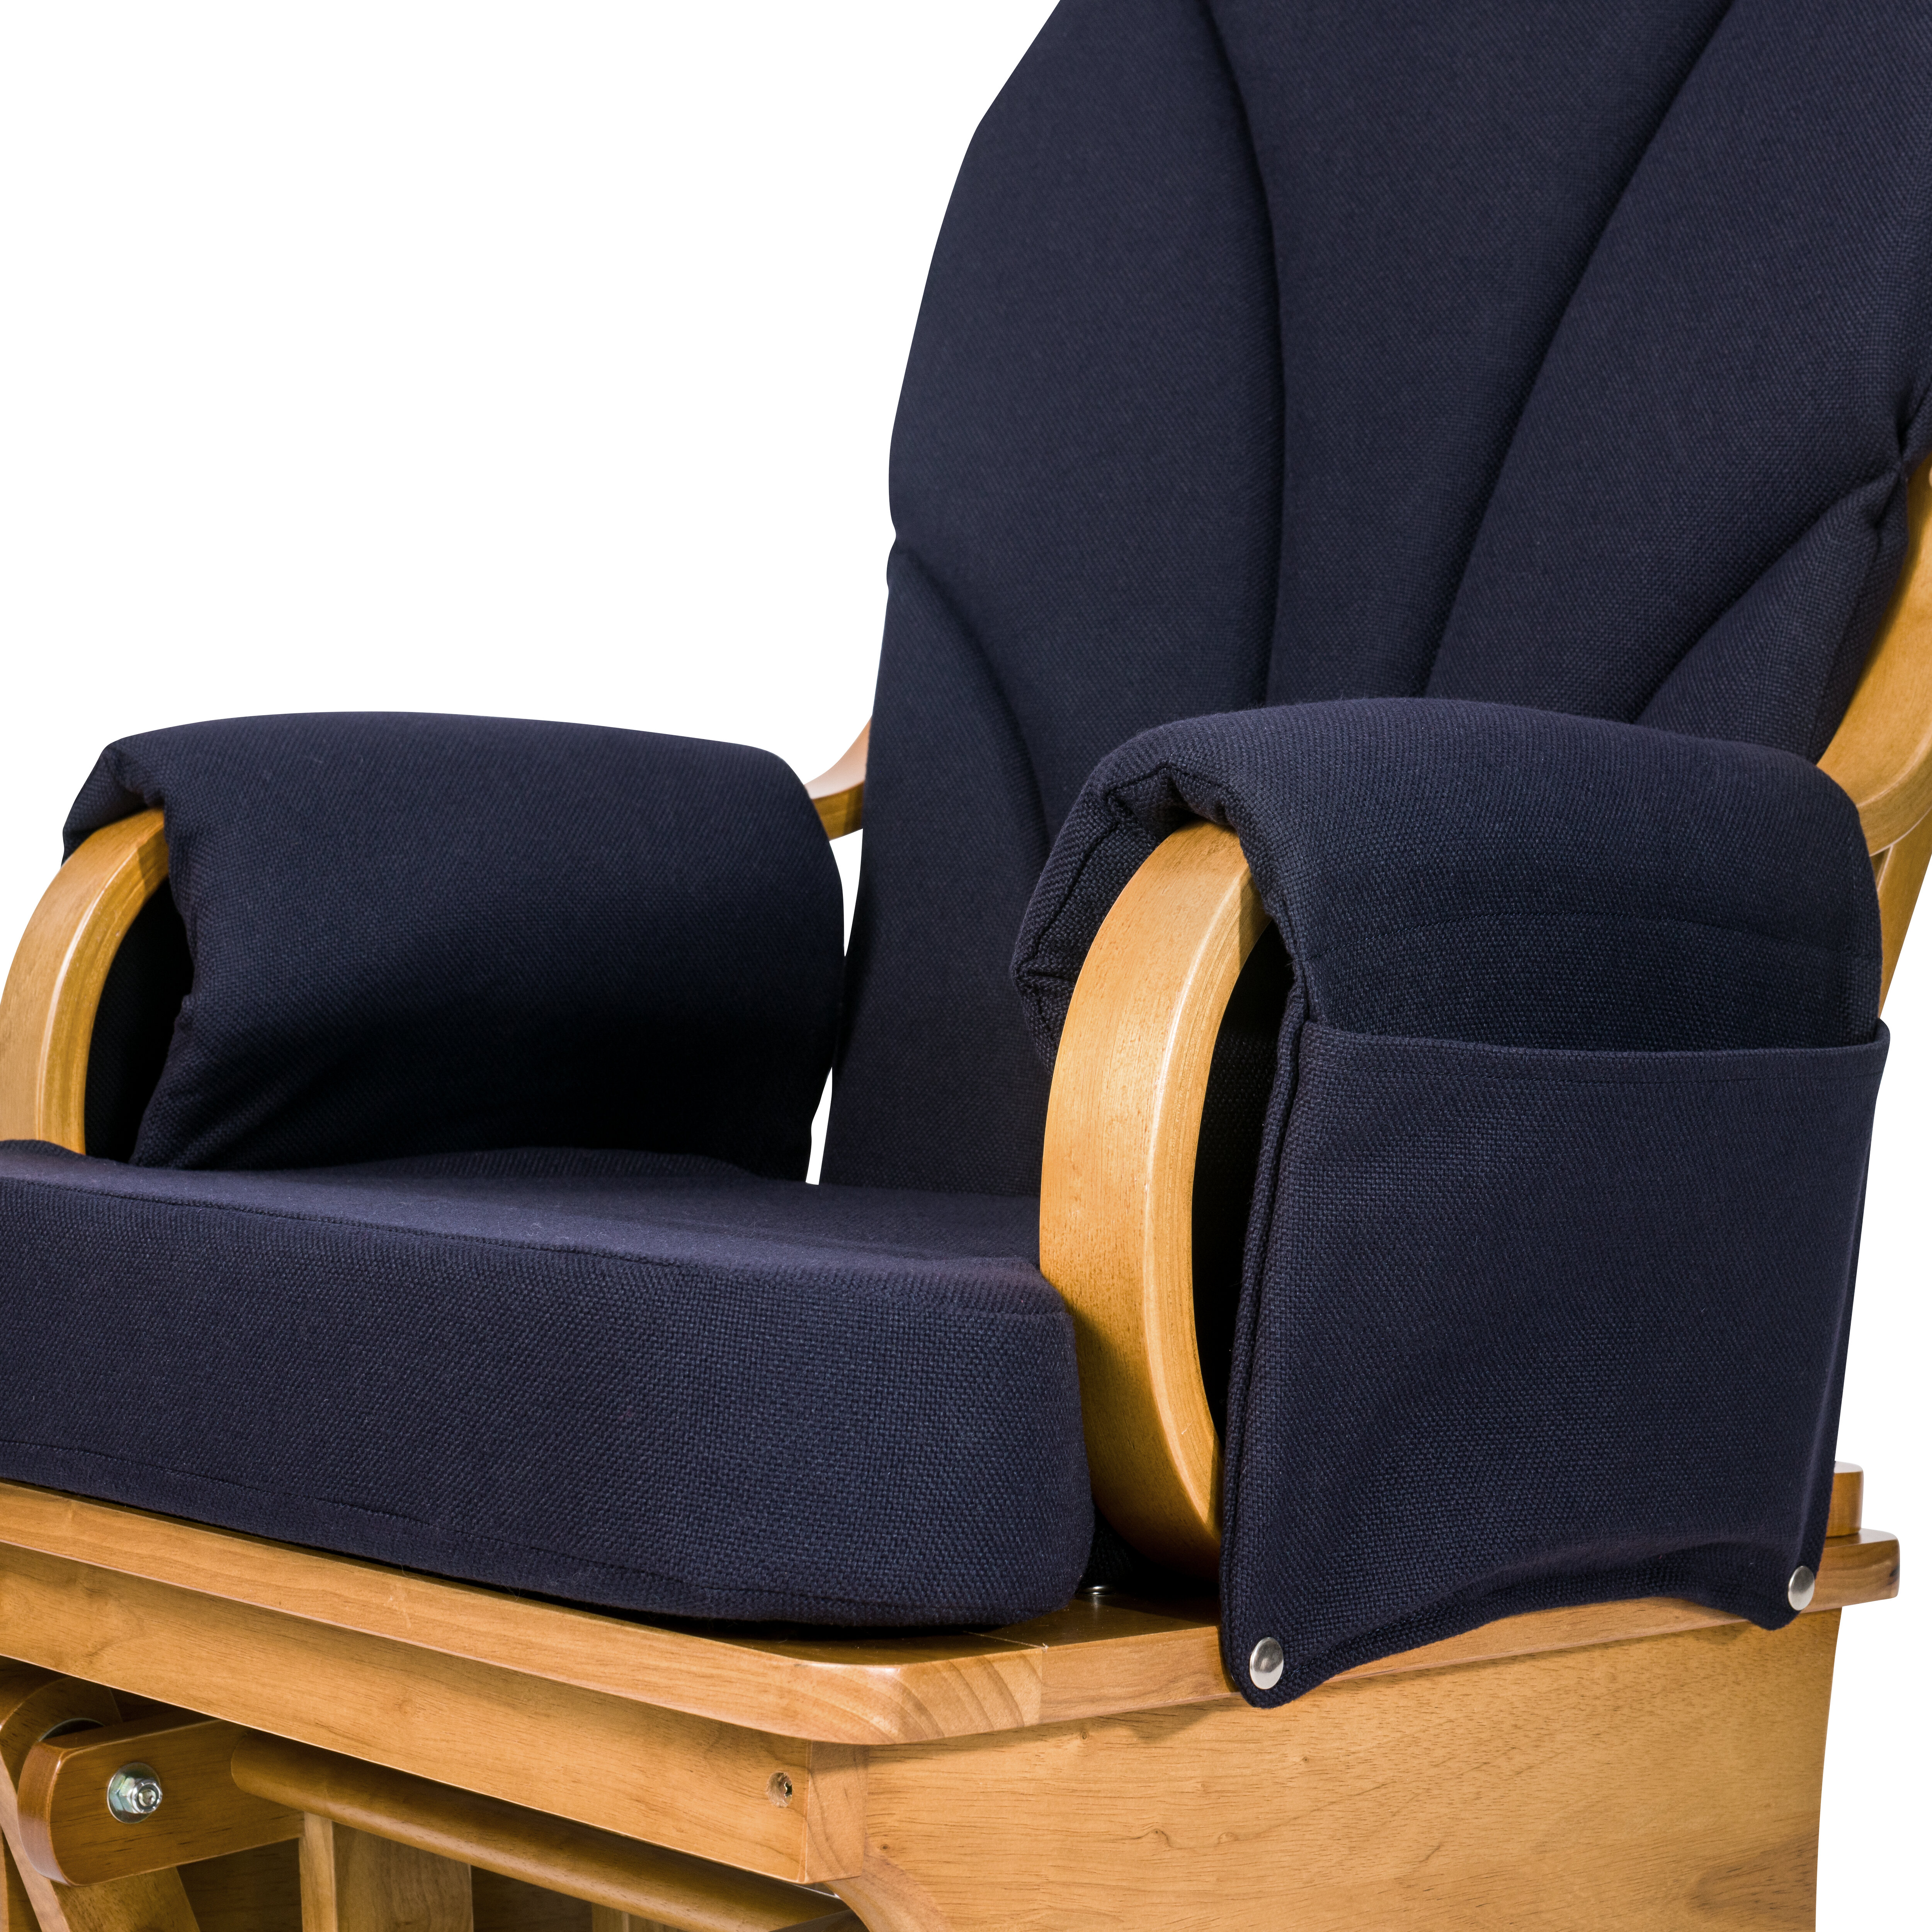 Coussins pour chaise et fauteuil - Wayfair Canada